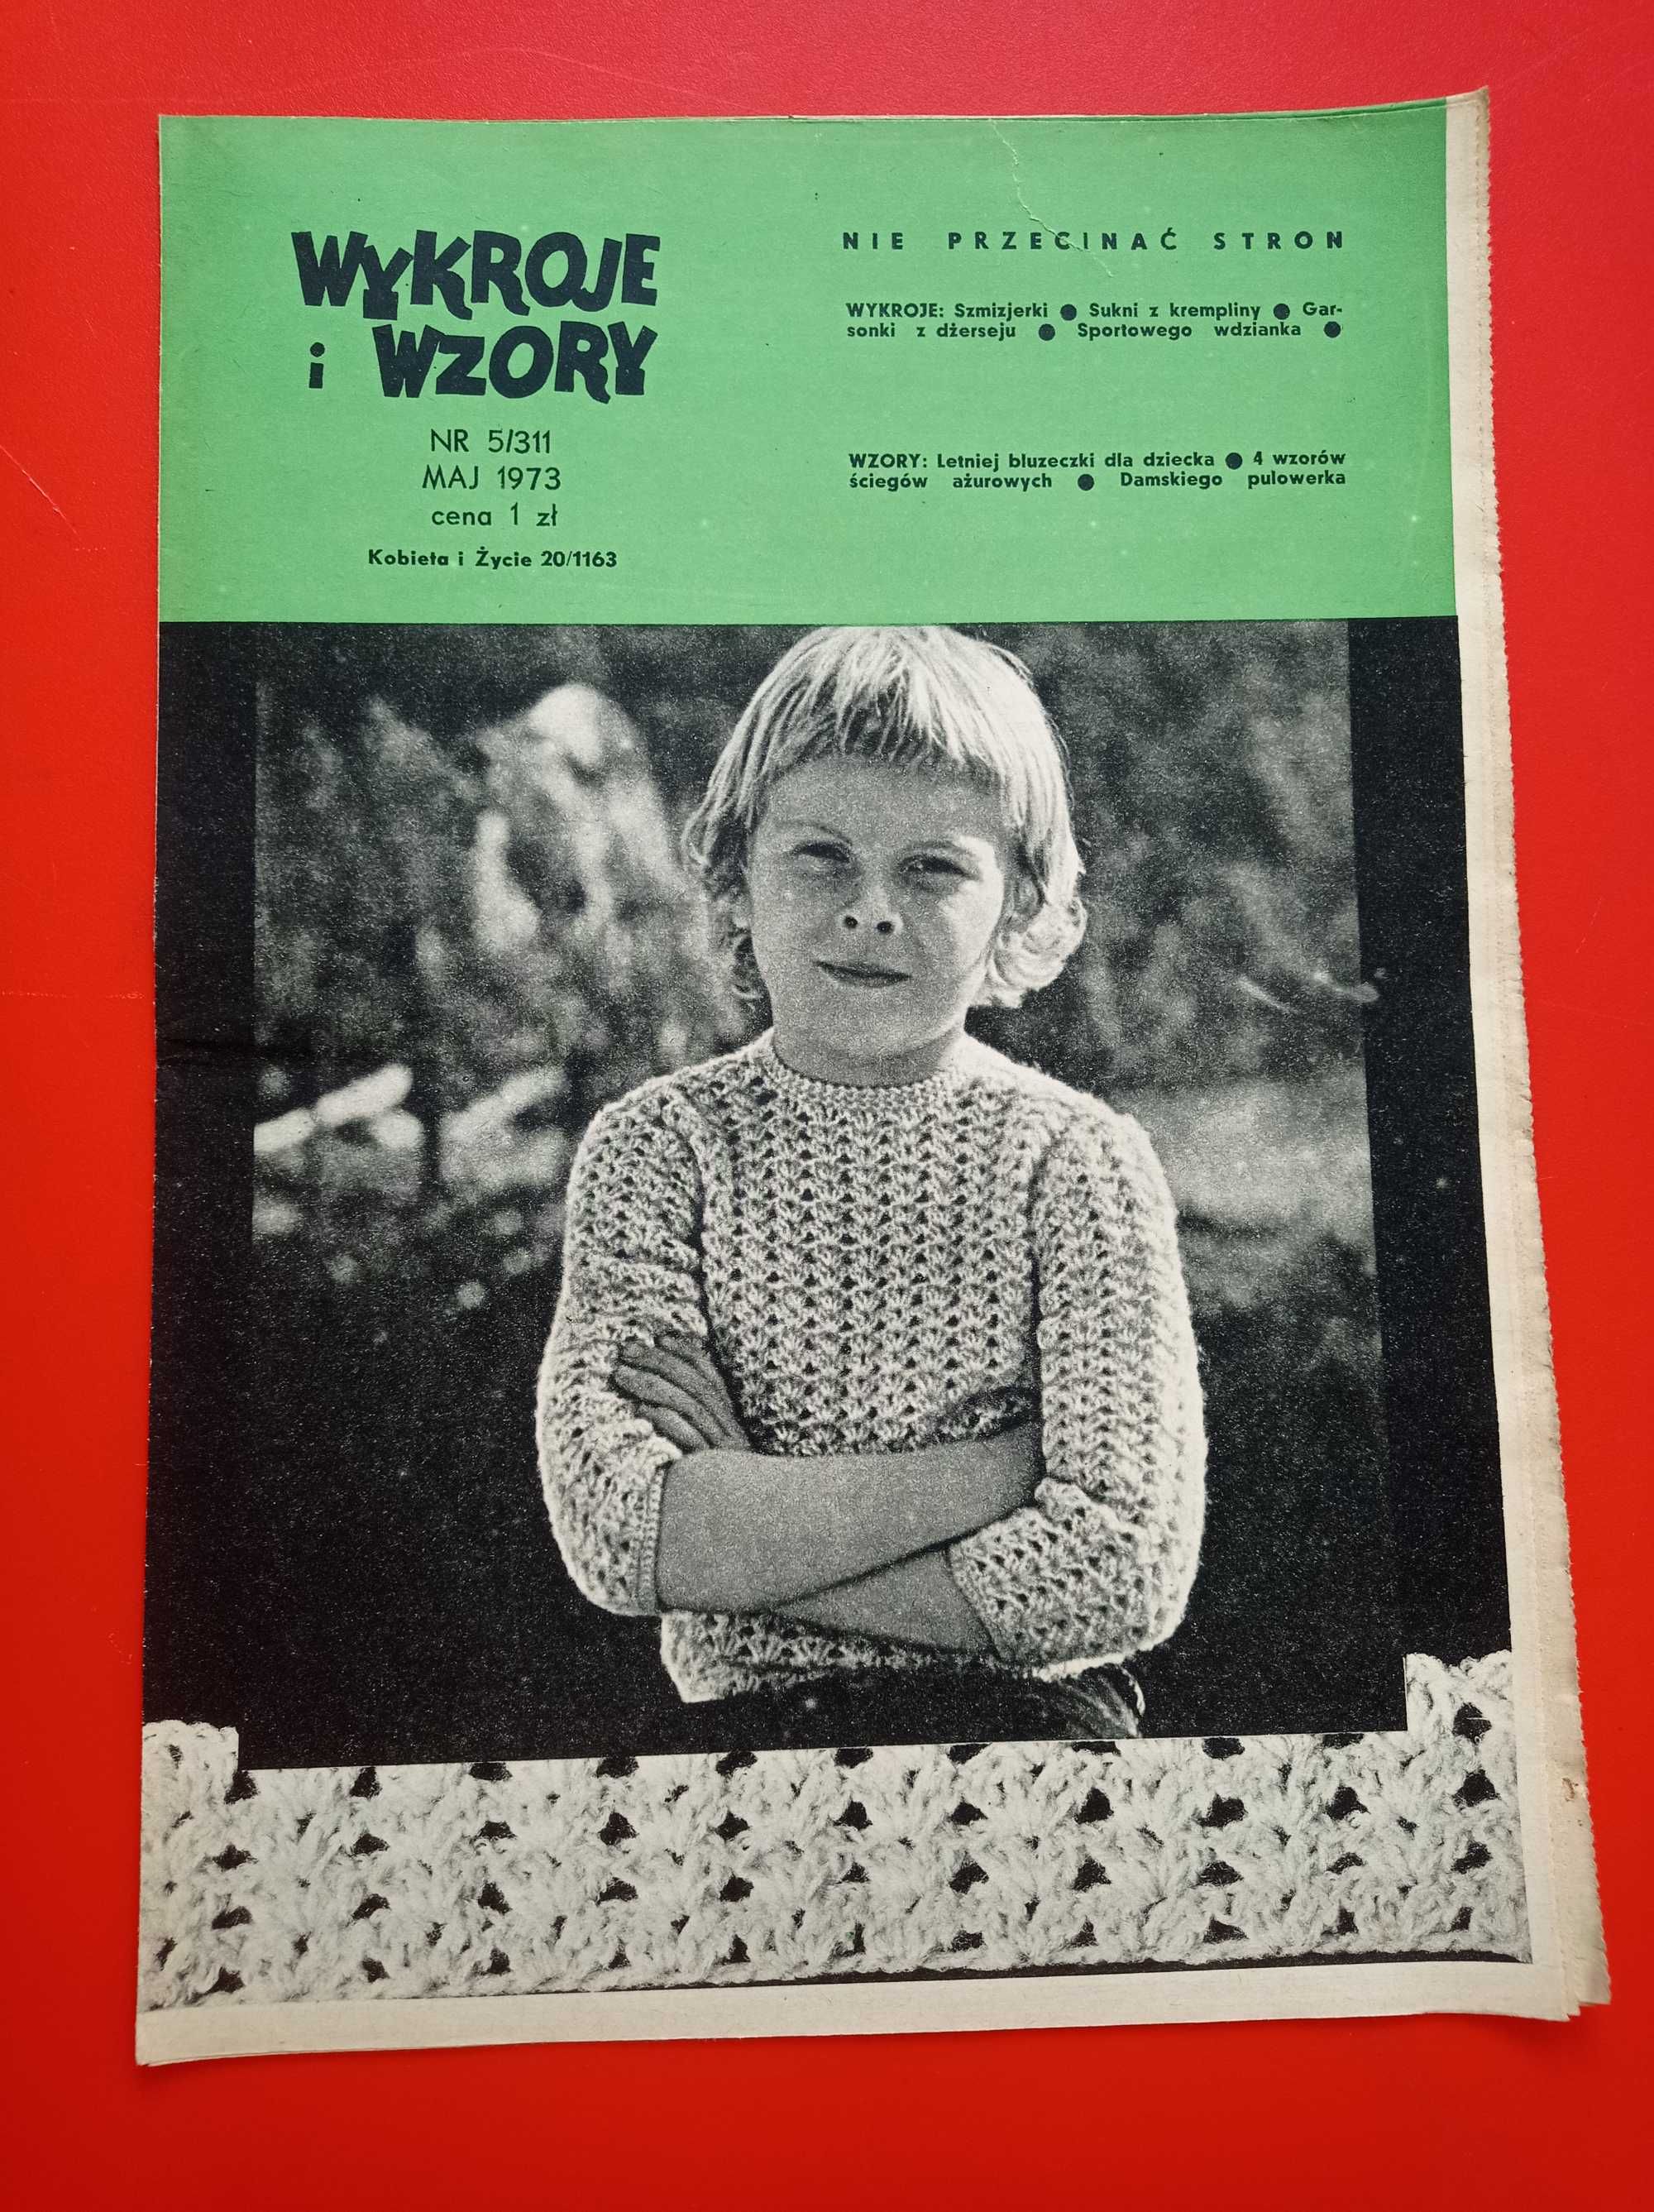 Wzory i wykroje, Kobieta i życie, maj 1973